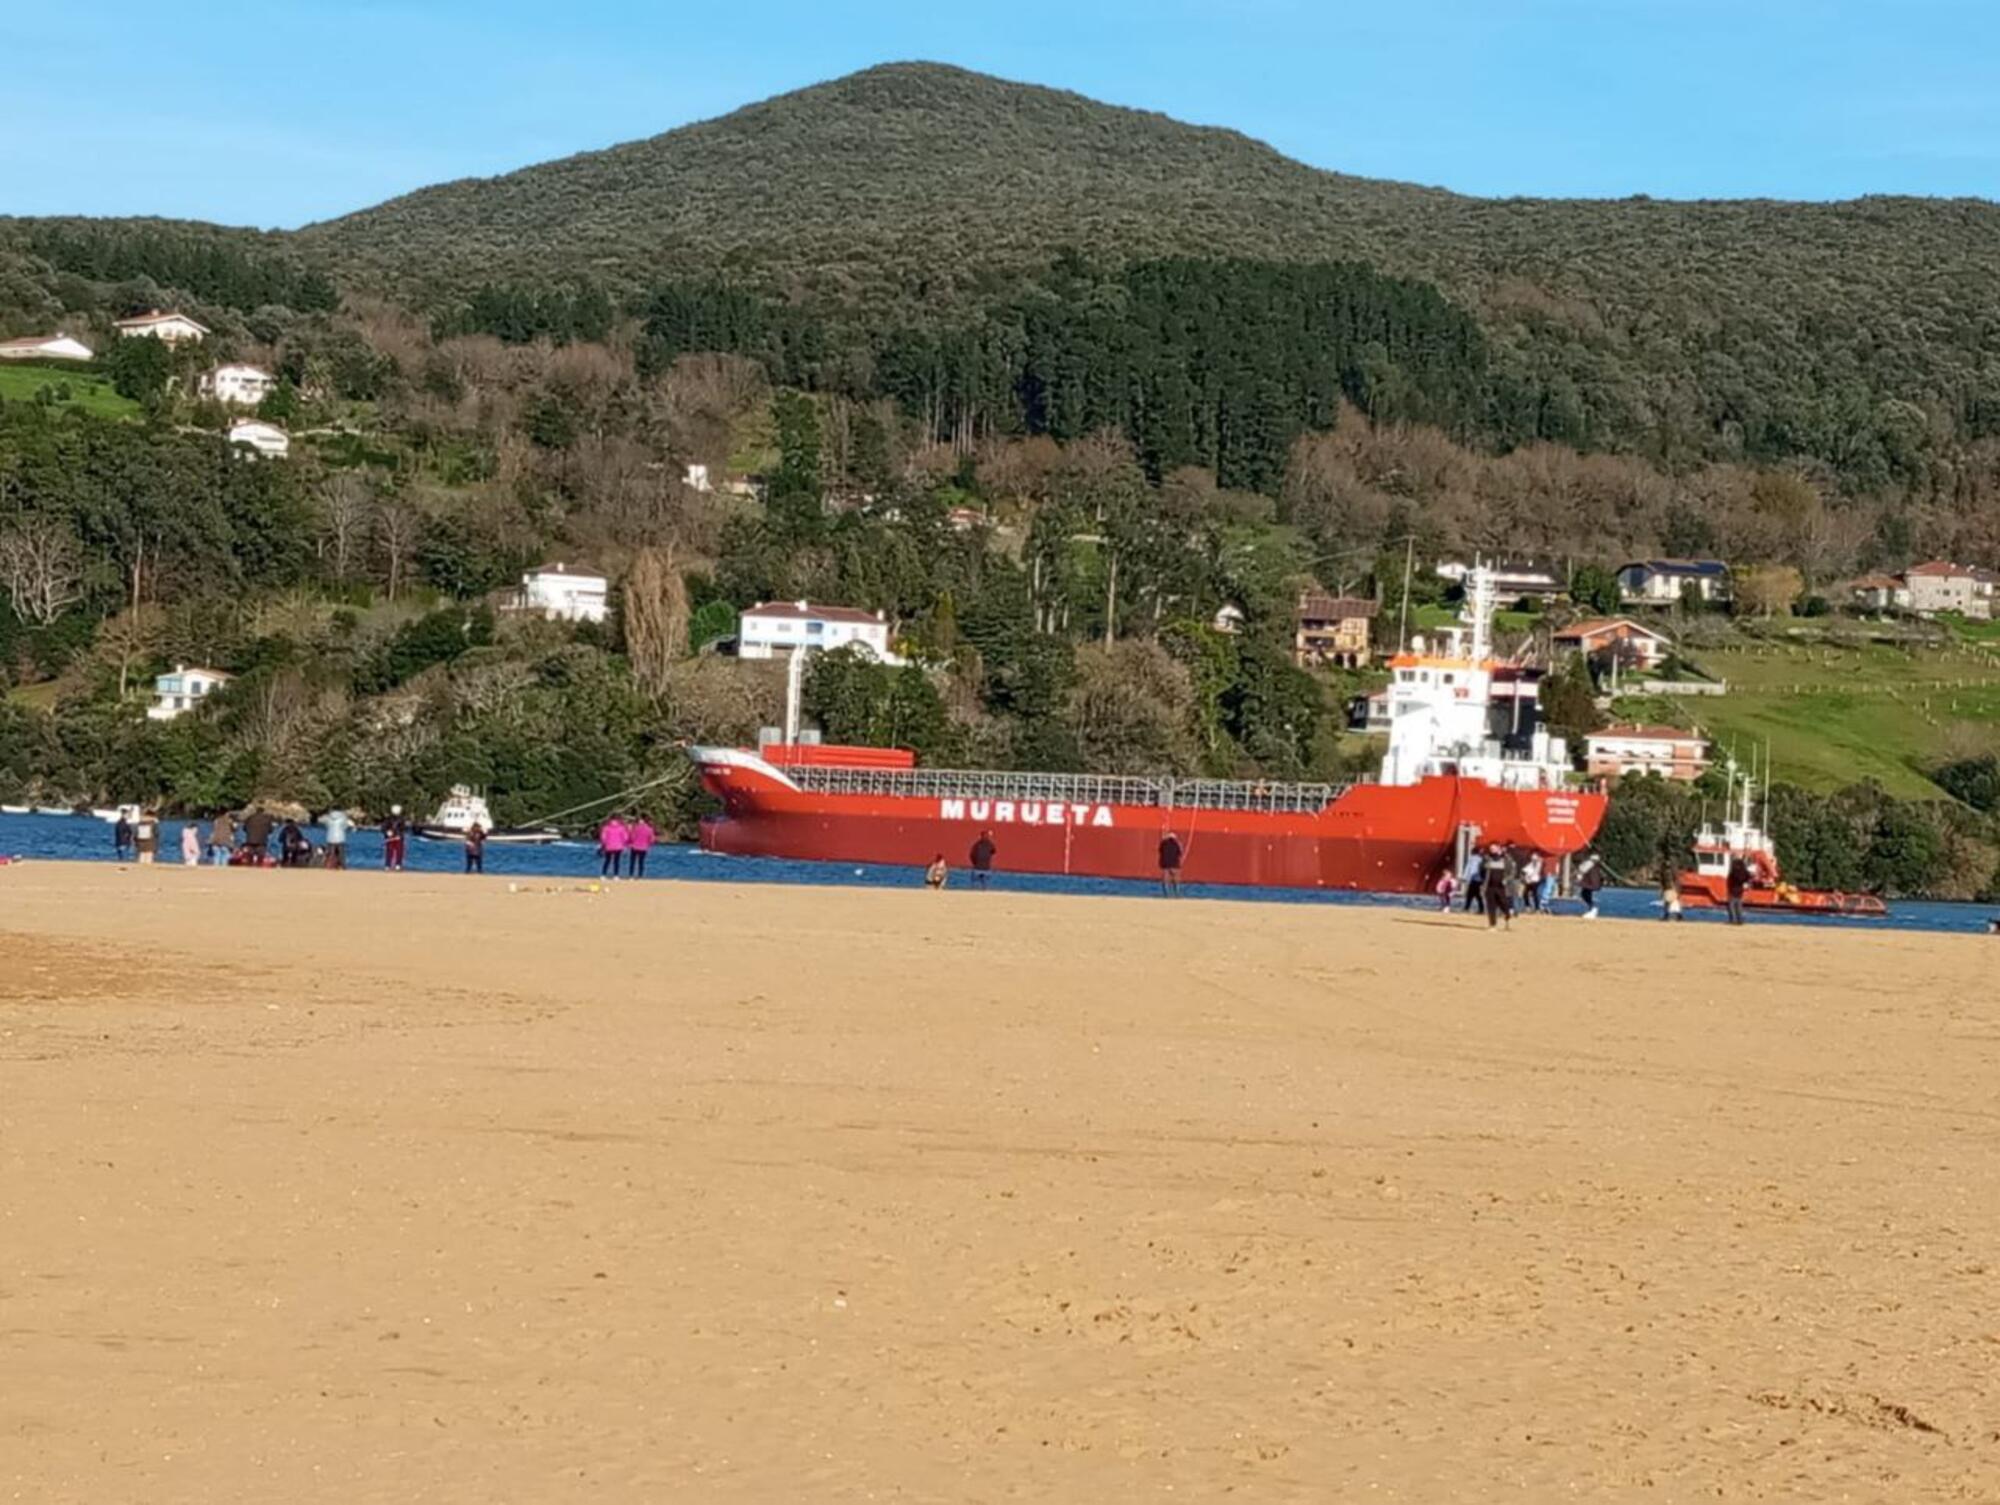 Barco Arteaga sale de Murueta en Urdaibai